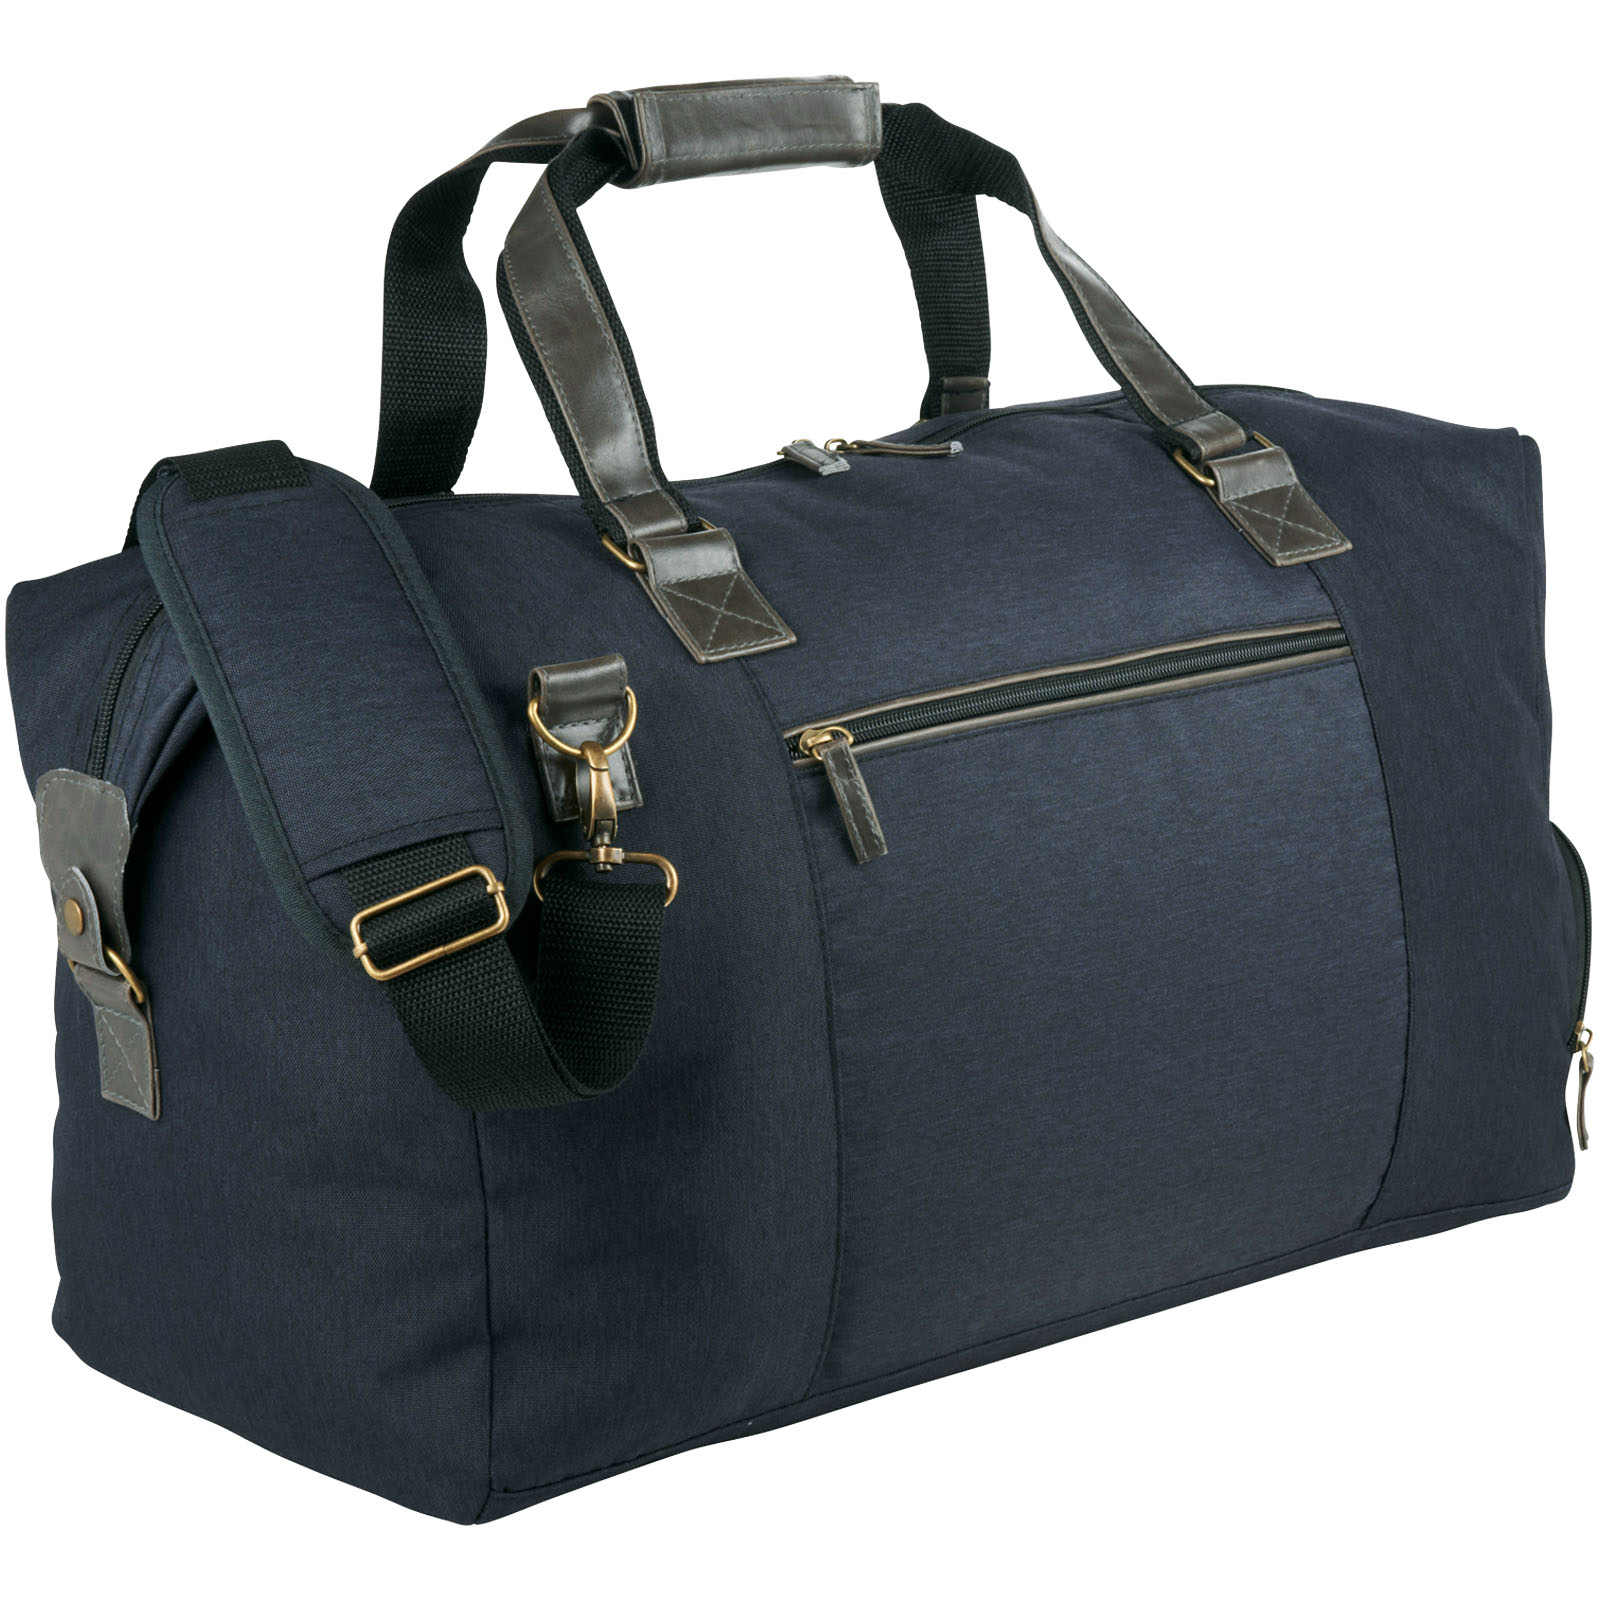 Advertising Travel bags - Capitol duffel bag 35L